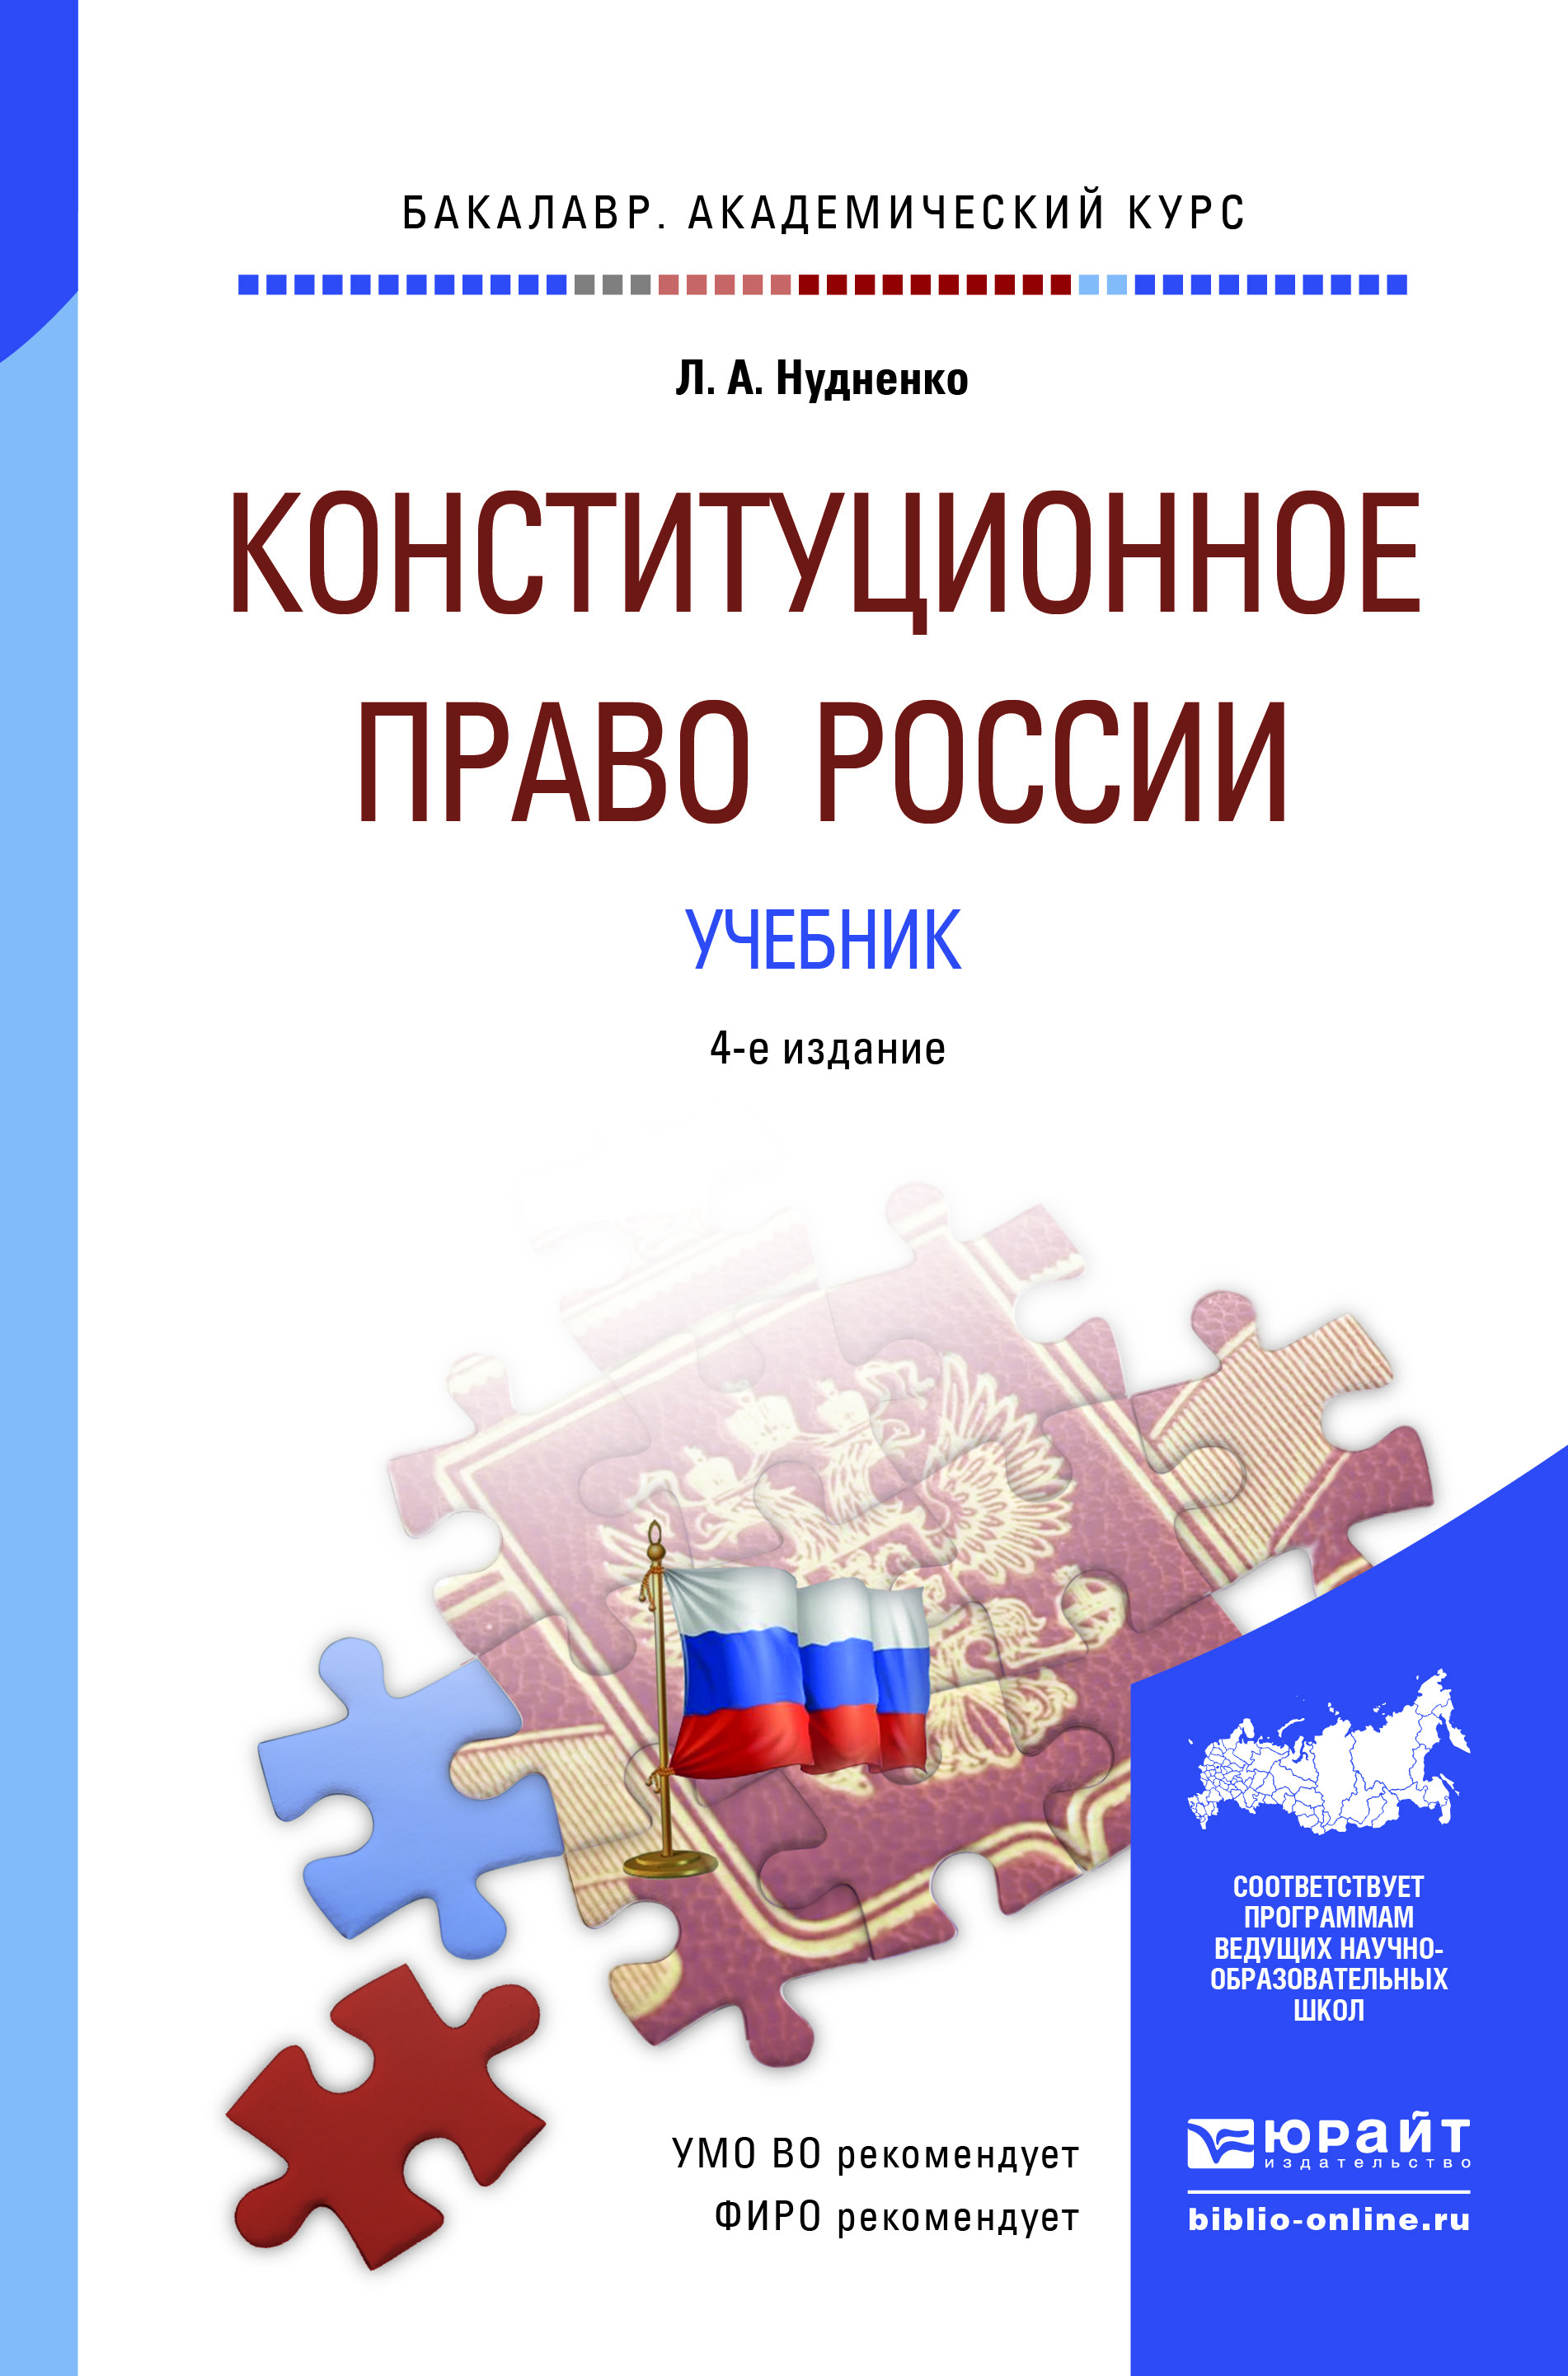 Конституционное право России. Учебник для академического бакалавриата